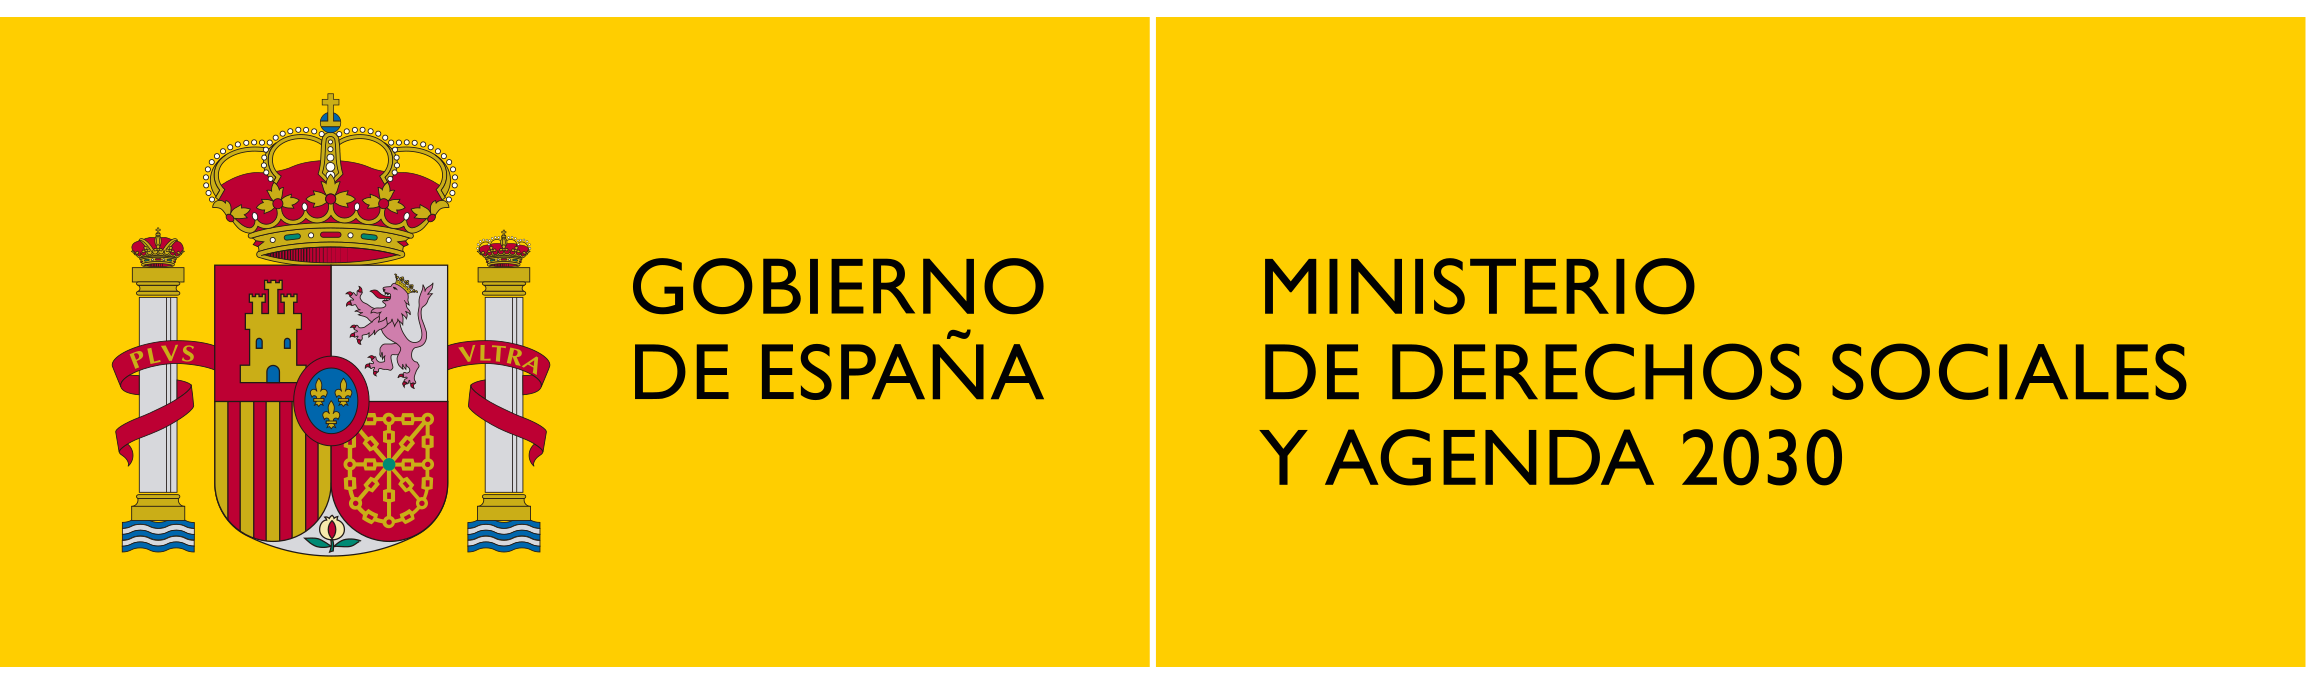 Logotipo Ministerio de derechos sociales y agenda 2030